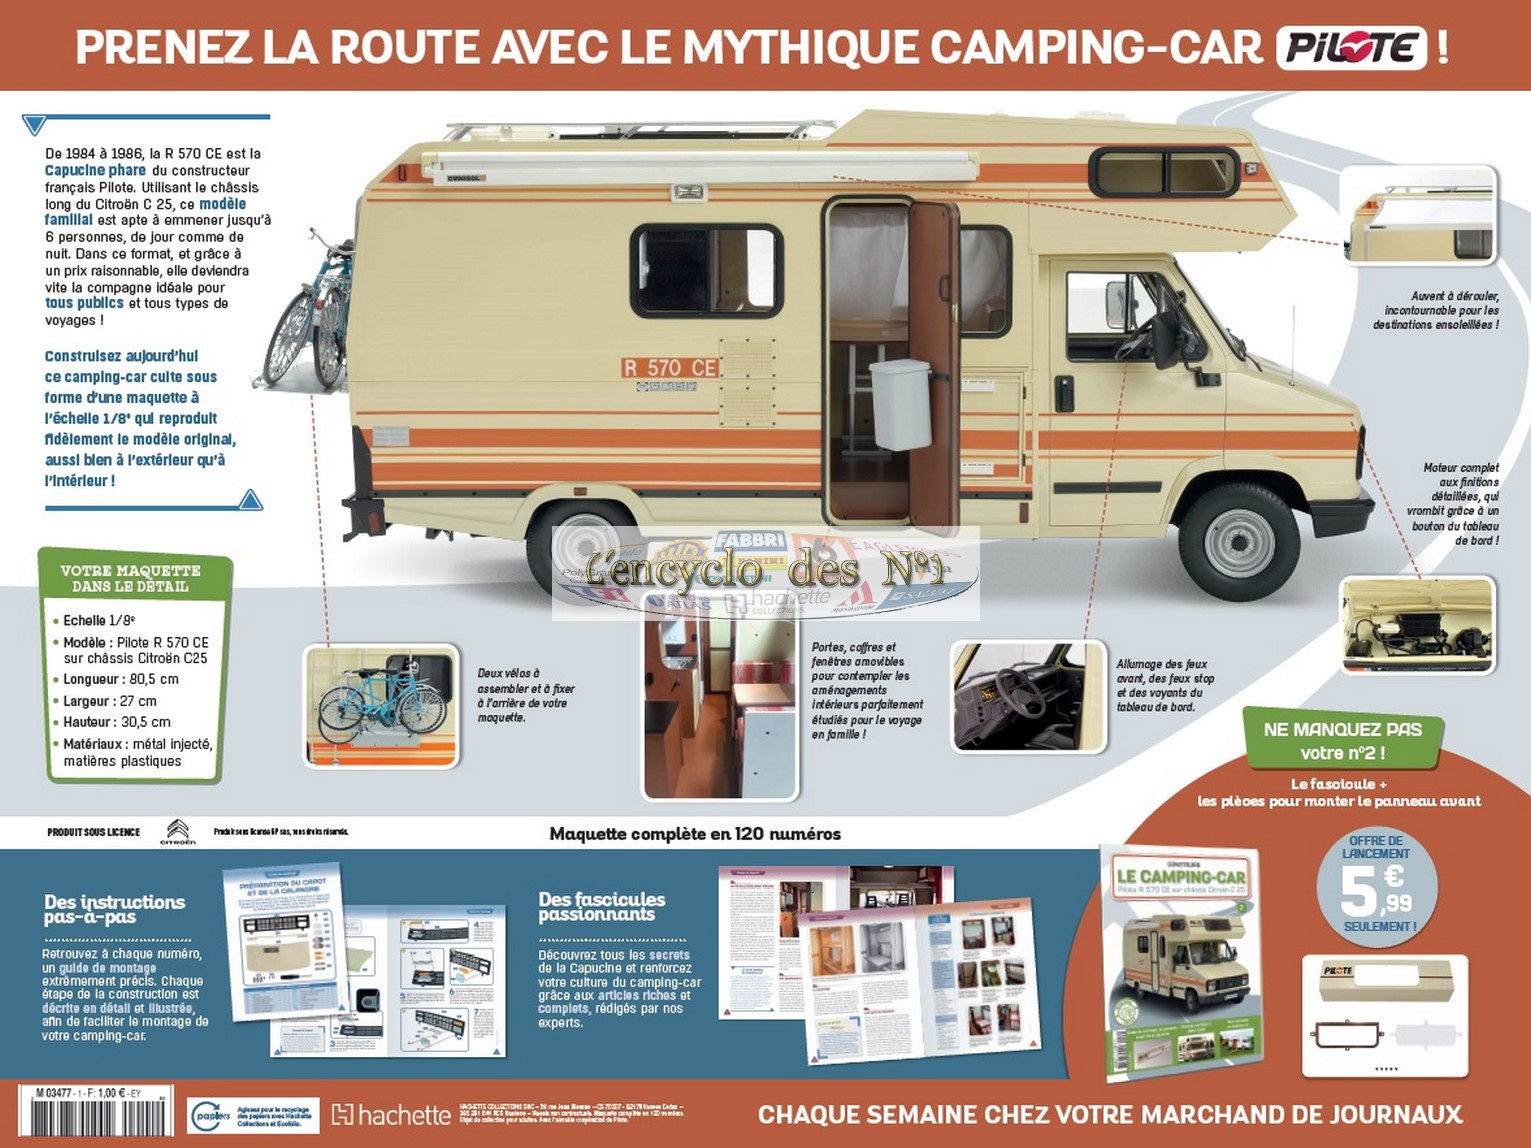 N° 1 Construisez le camping-car Pilote R 570 CE - Test - L' encyclo des N° 1